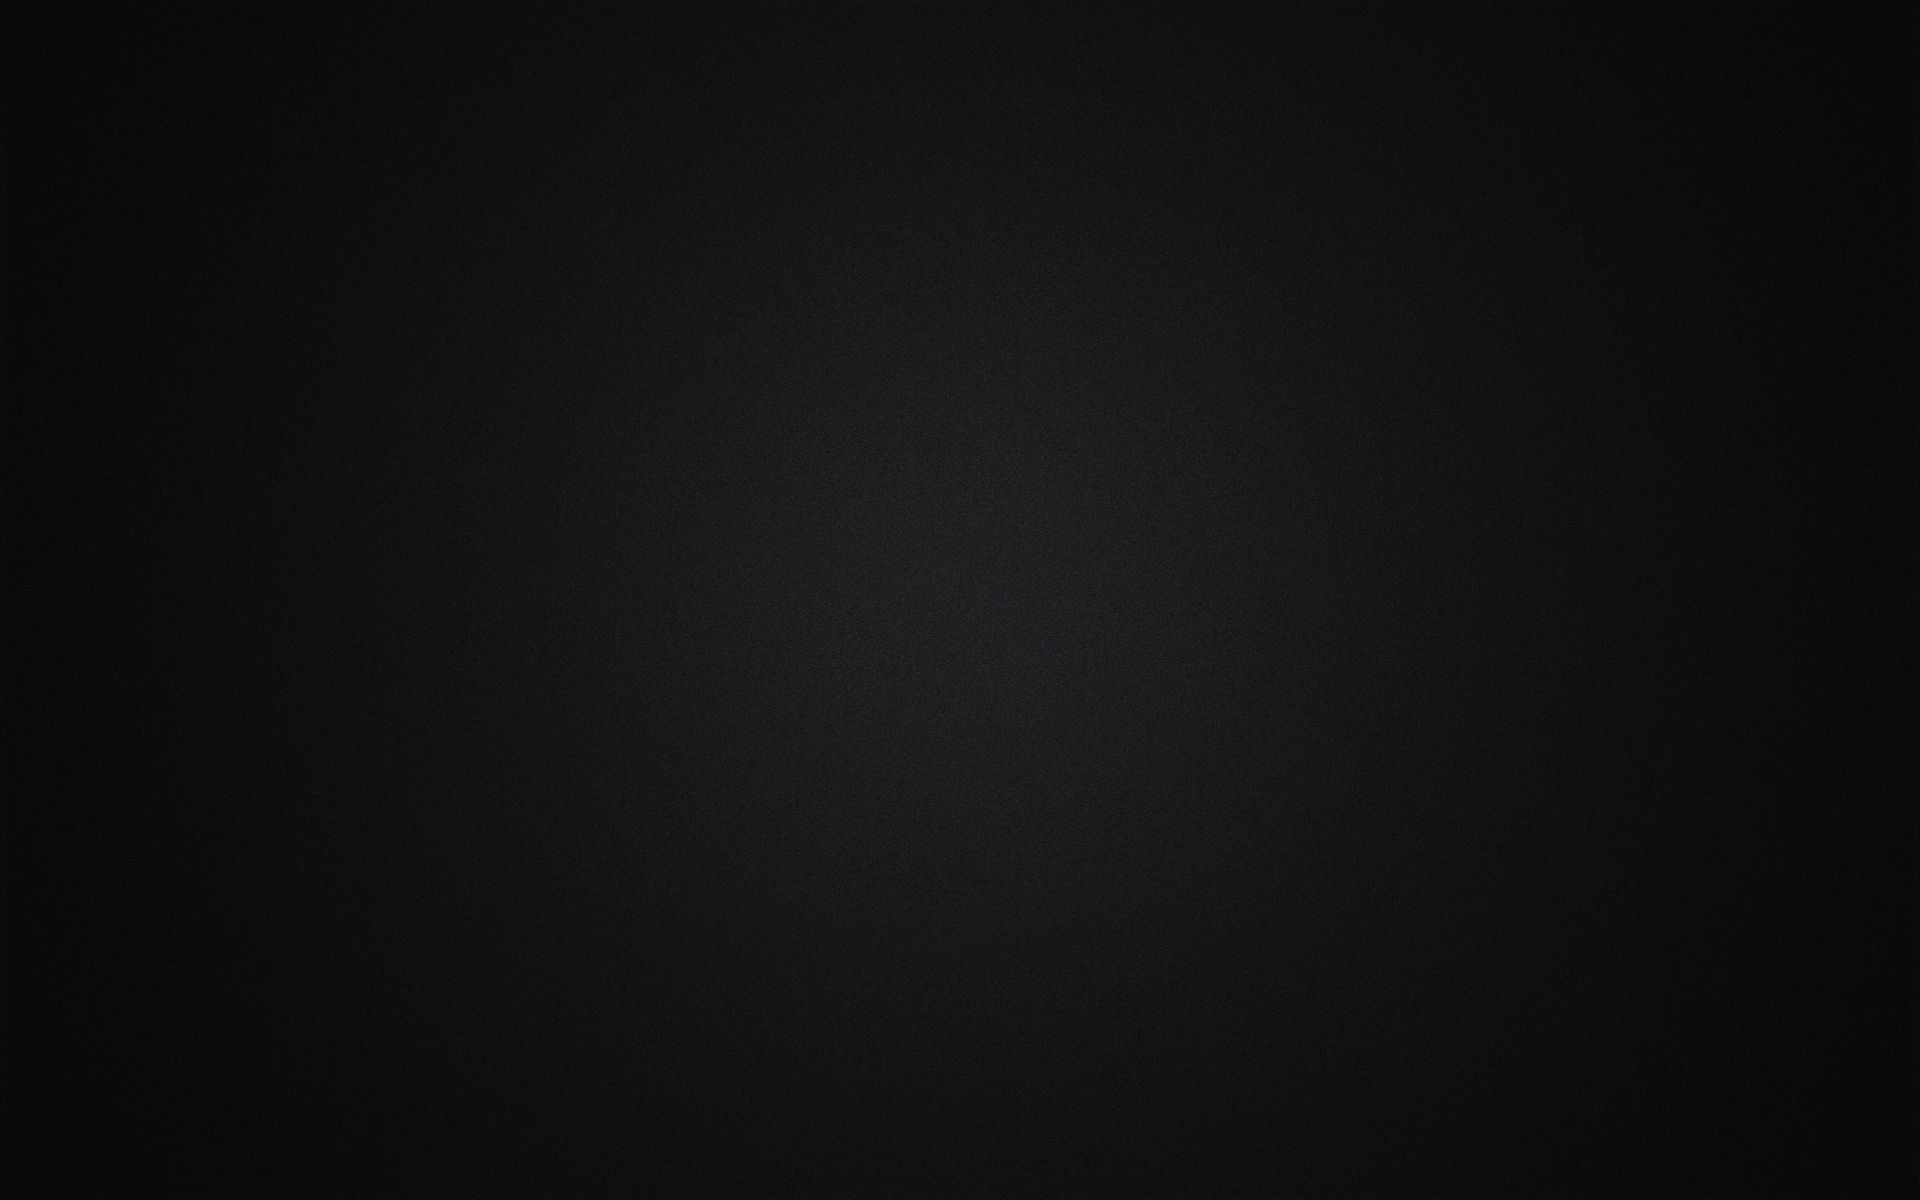 Full Dark Black Screen Wallpapers - Wallpaper Cave